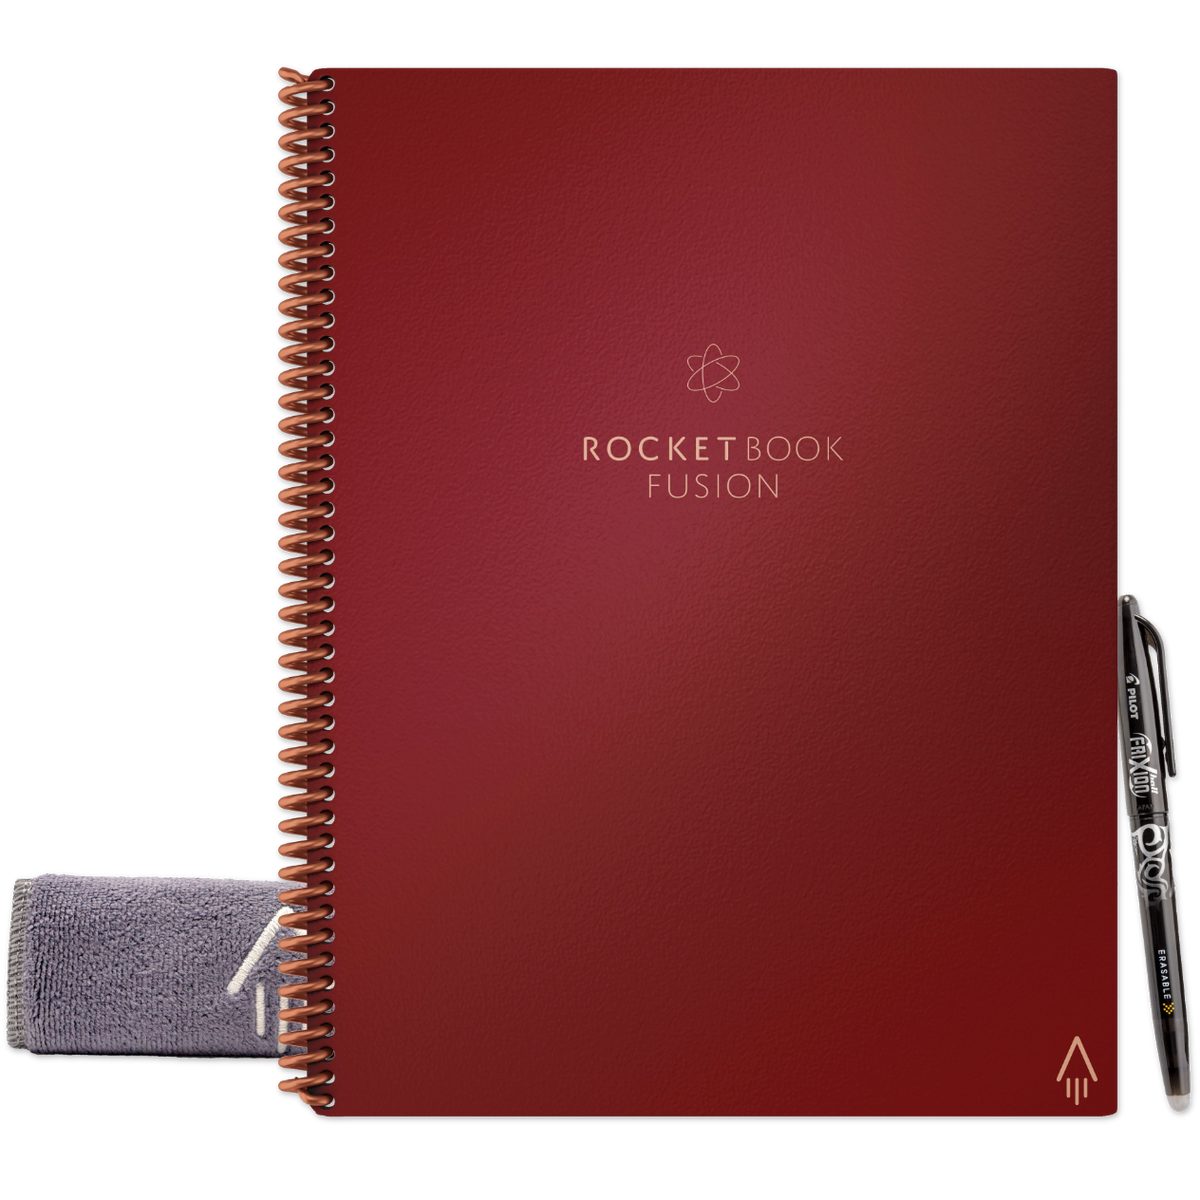 Notizbuch Rocket Notiz- Skizzenbuch Everlast Book Sky, Scarlet - Symbol Rocketbook mit FUSION und Tagging App-Anbindung und